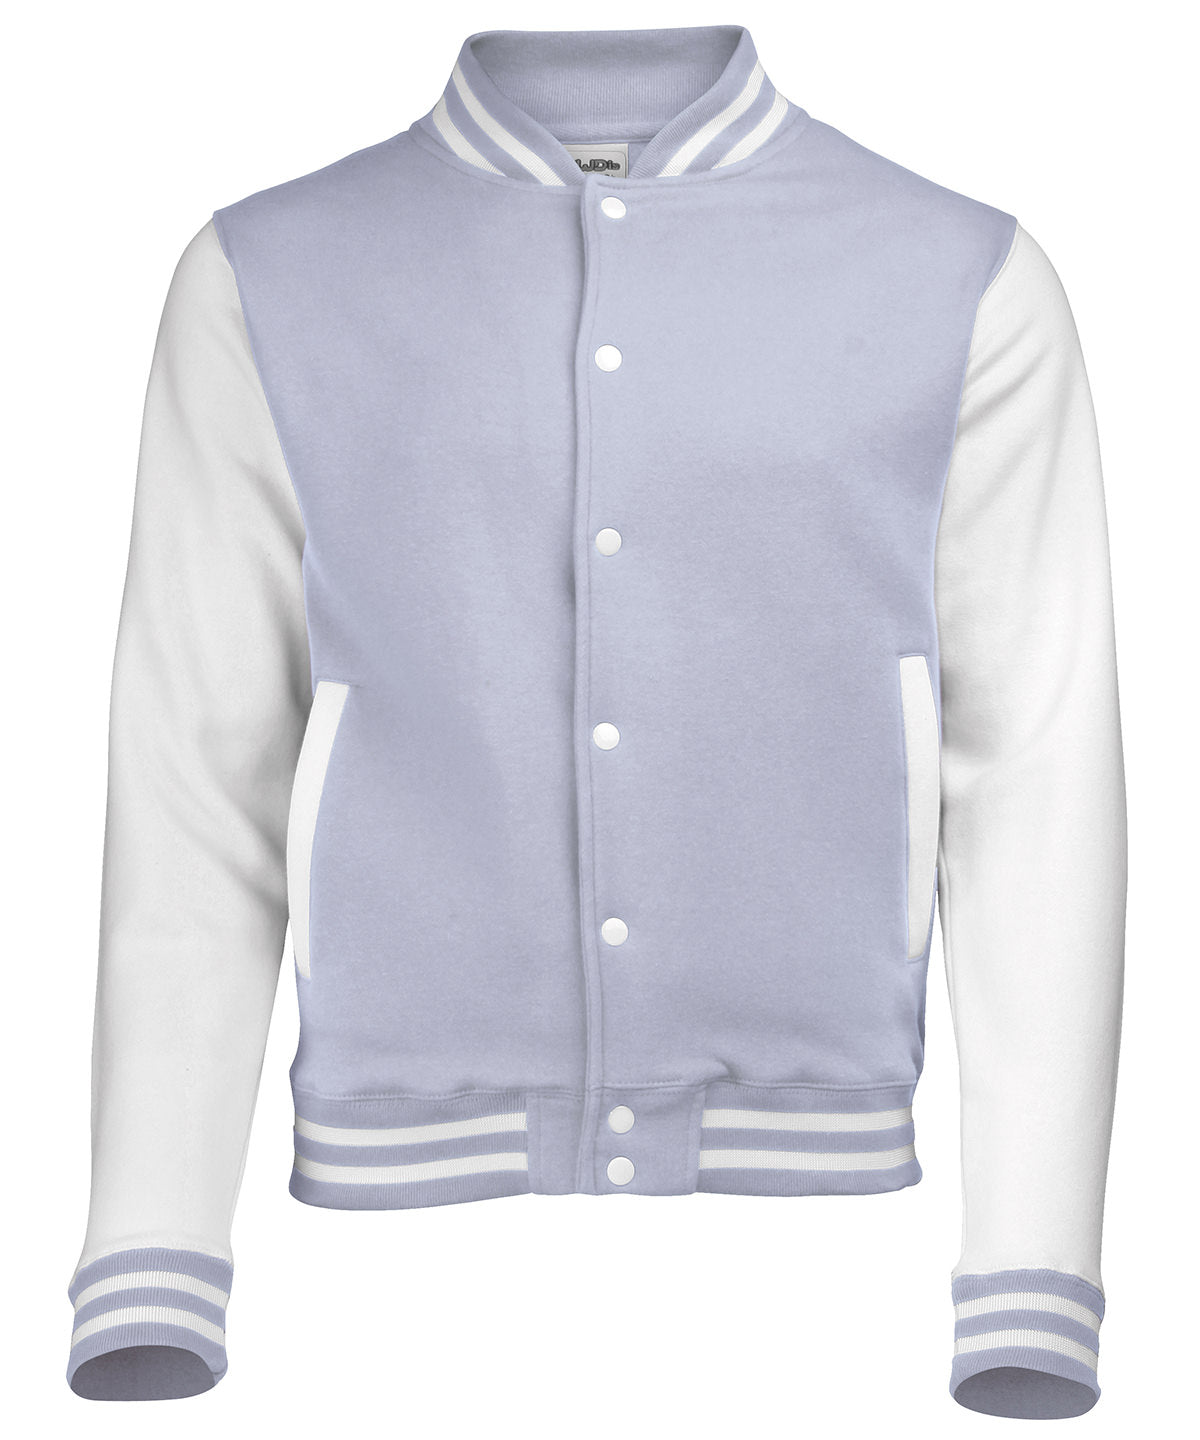 Personalised Jackets - Burgundy AWDis Just Hoods Varsity jacket